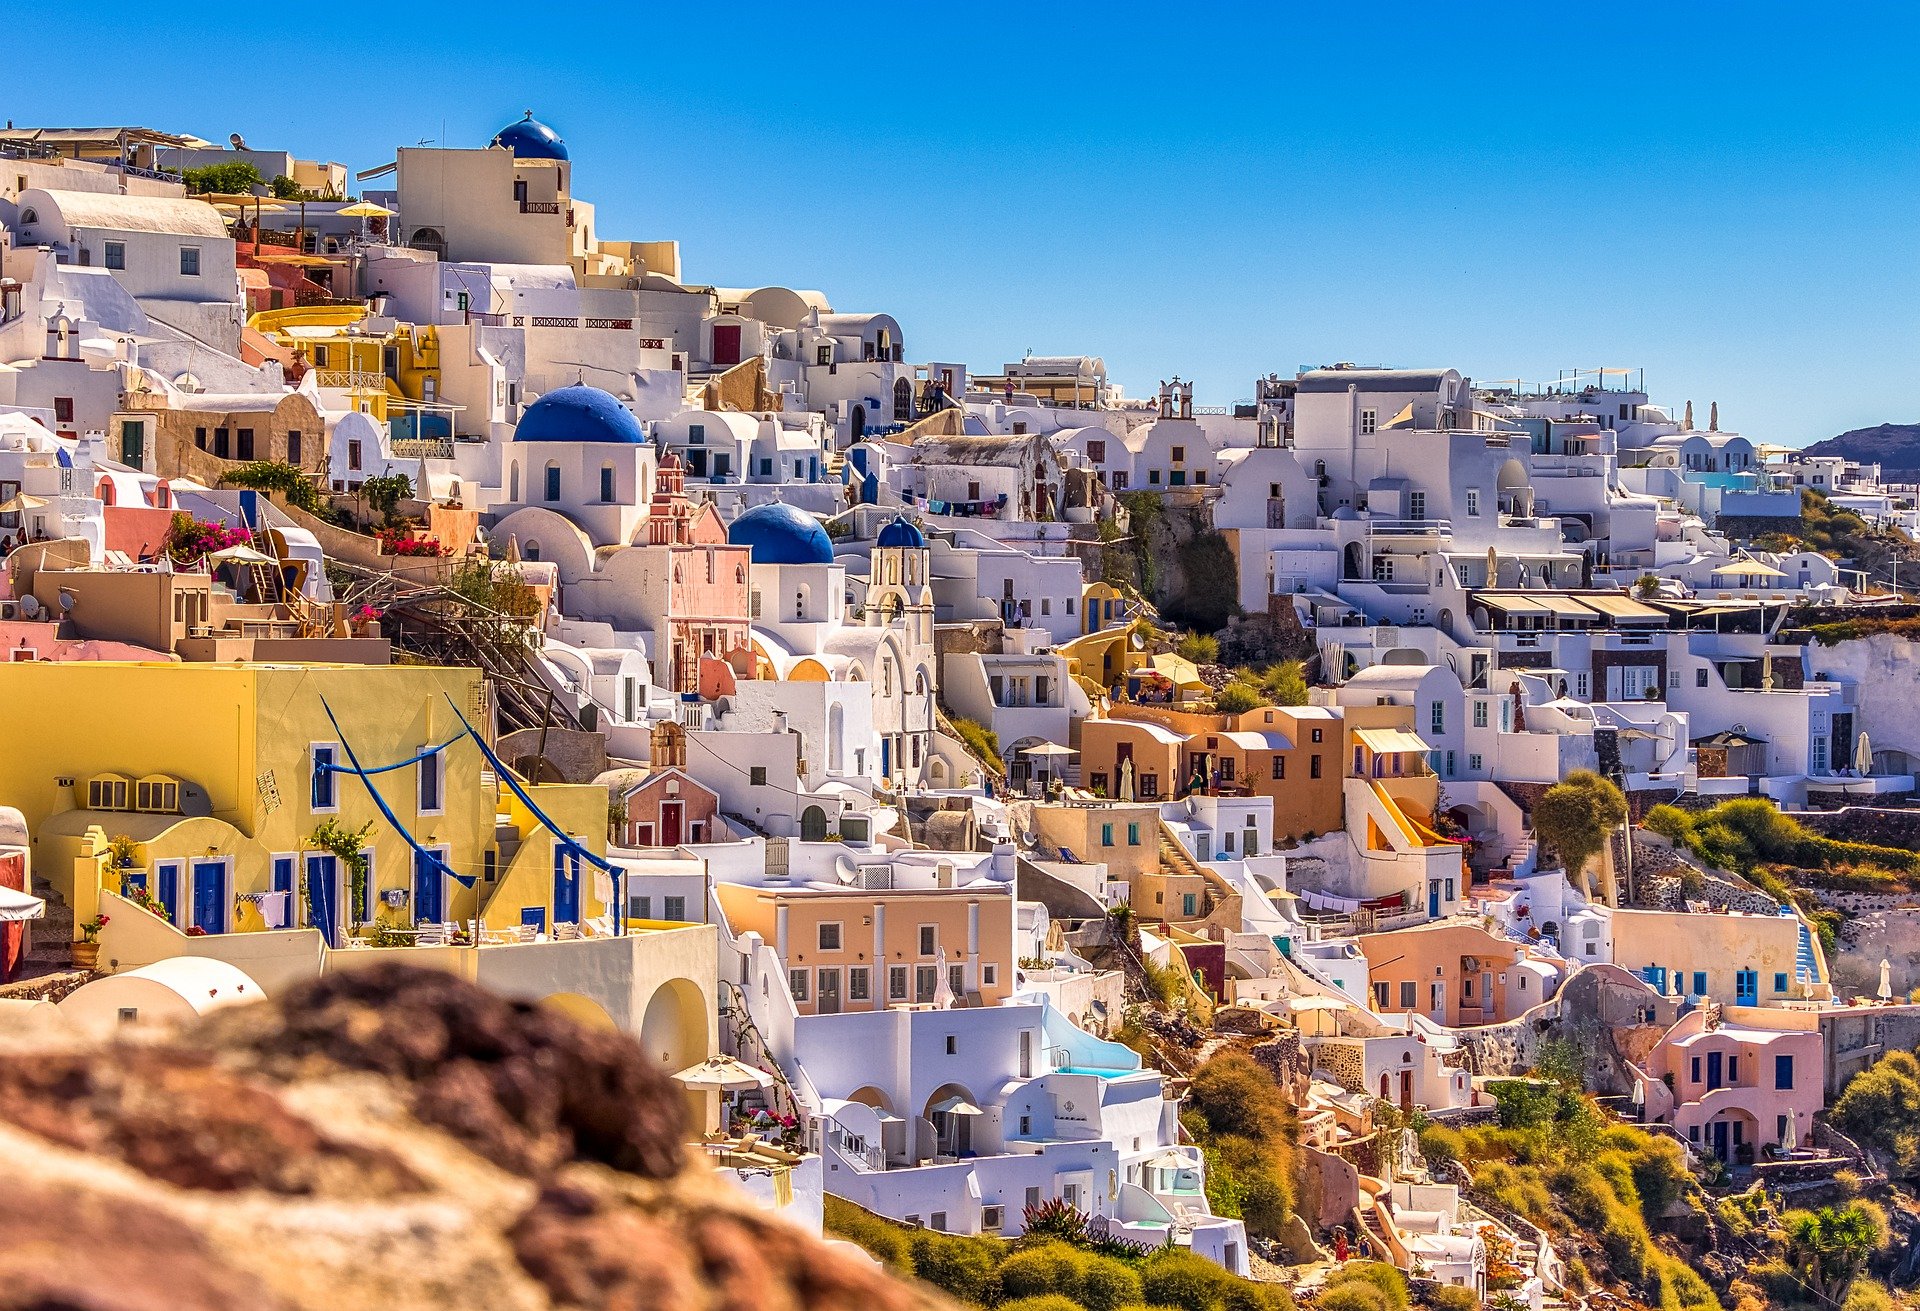 За почивка в Гърция може да се нуждаете от 2